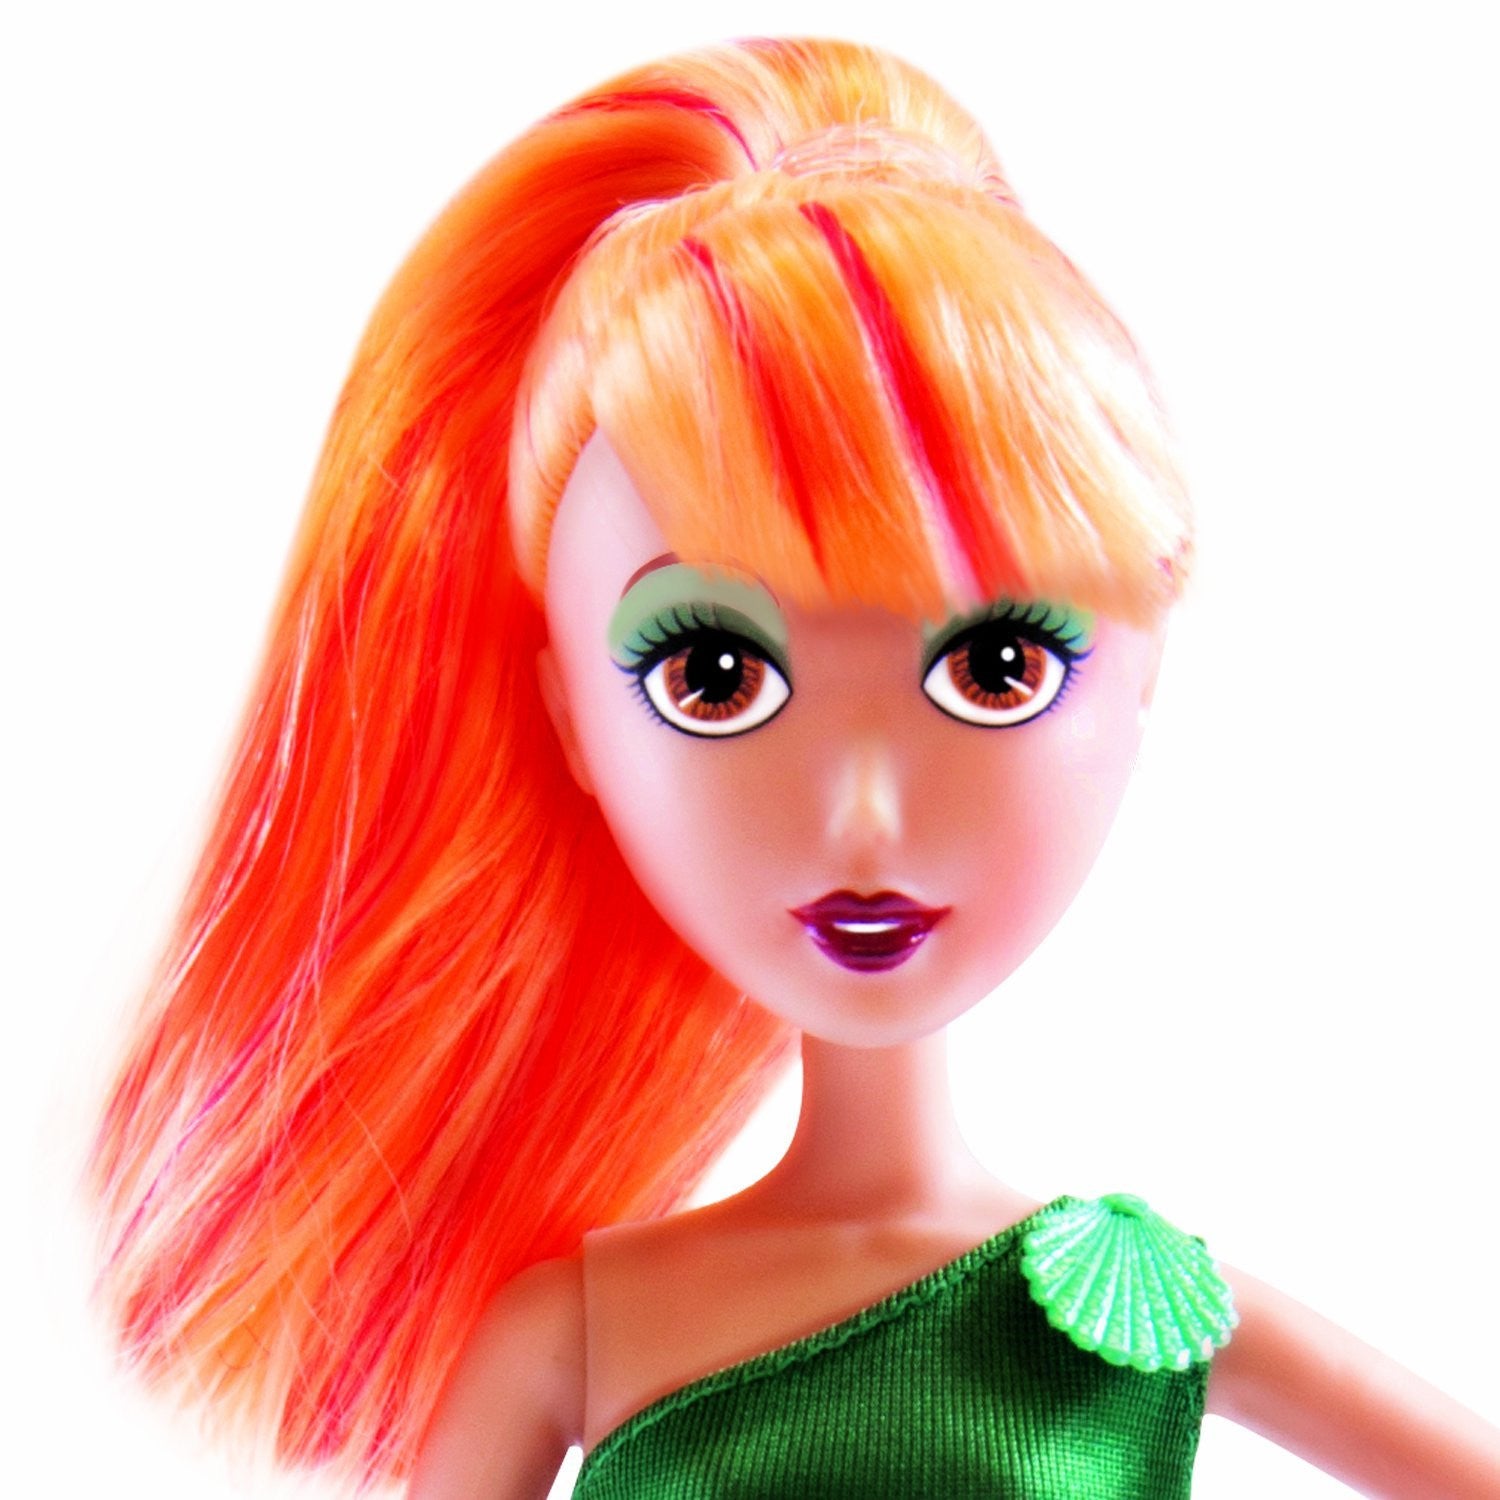 Fairy Tale High Little Mermaid Fashion Doll